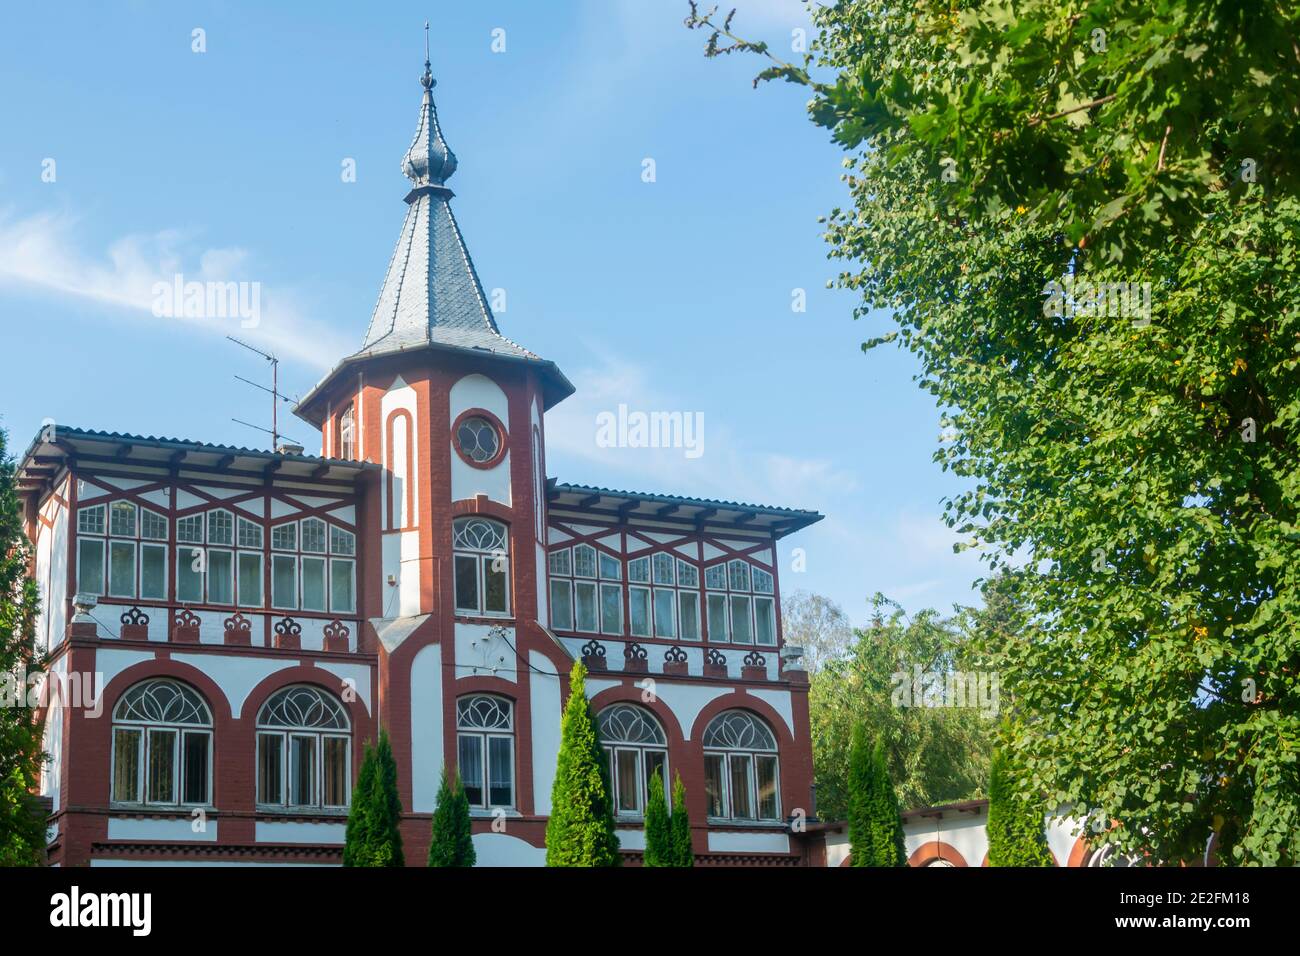 Svetlogorsk, regione di Kaliningrad, Russia - Settembre 2020: Antico castello con torre e guglia sul tetto. Bella architettura del 19 ° secolo. Foto Stock